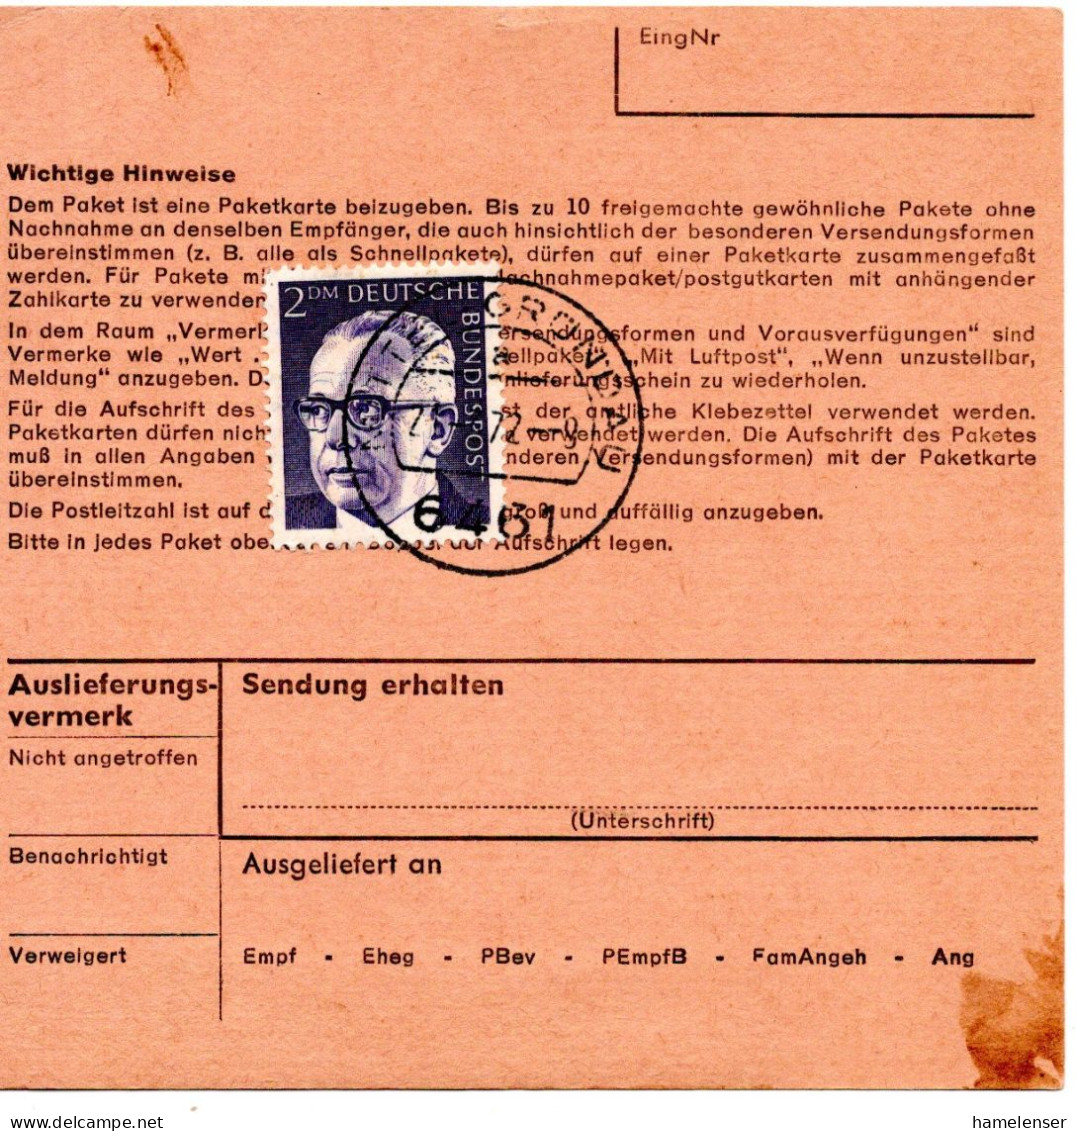 69519 - Bund - 1972 - 2DM Heinemann EF A PaketKte MITTEL GRUENDAU -> DDR - Cartas & Documentos